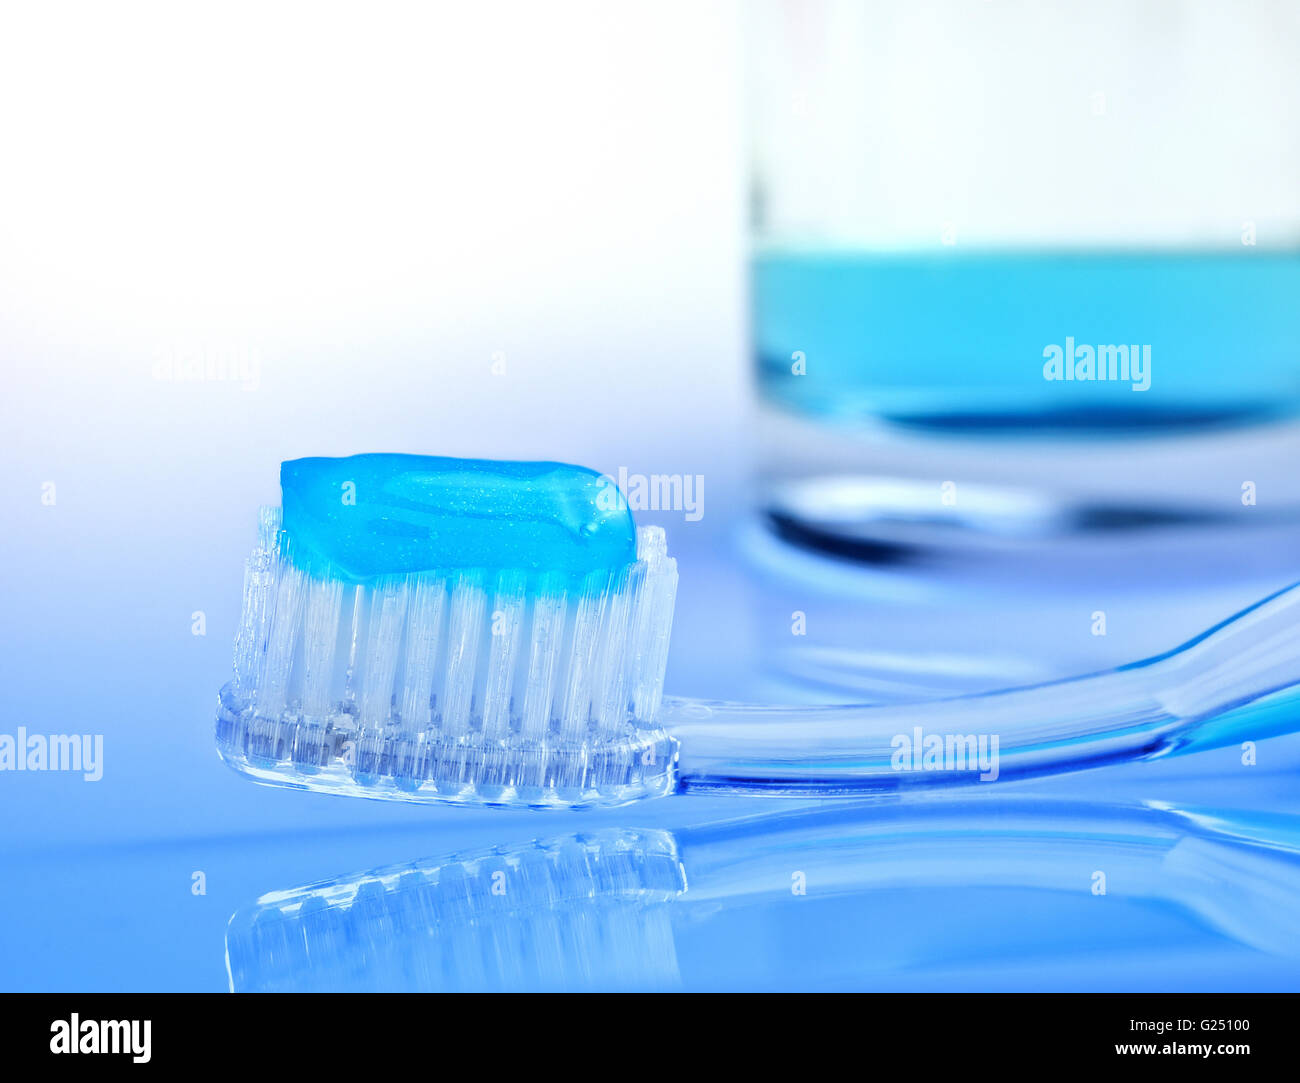 El cepillo dental y enjuague bucal en vidrio Fotografía de stock - Alamy